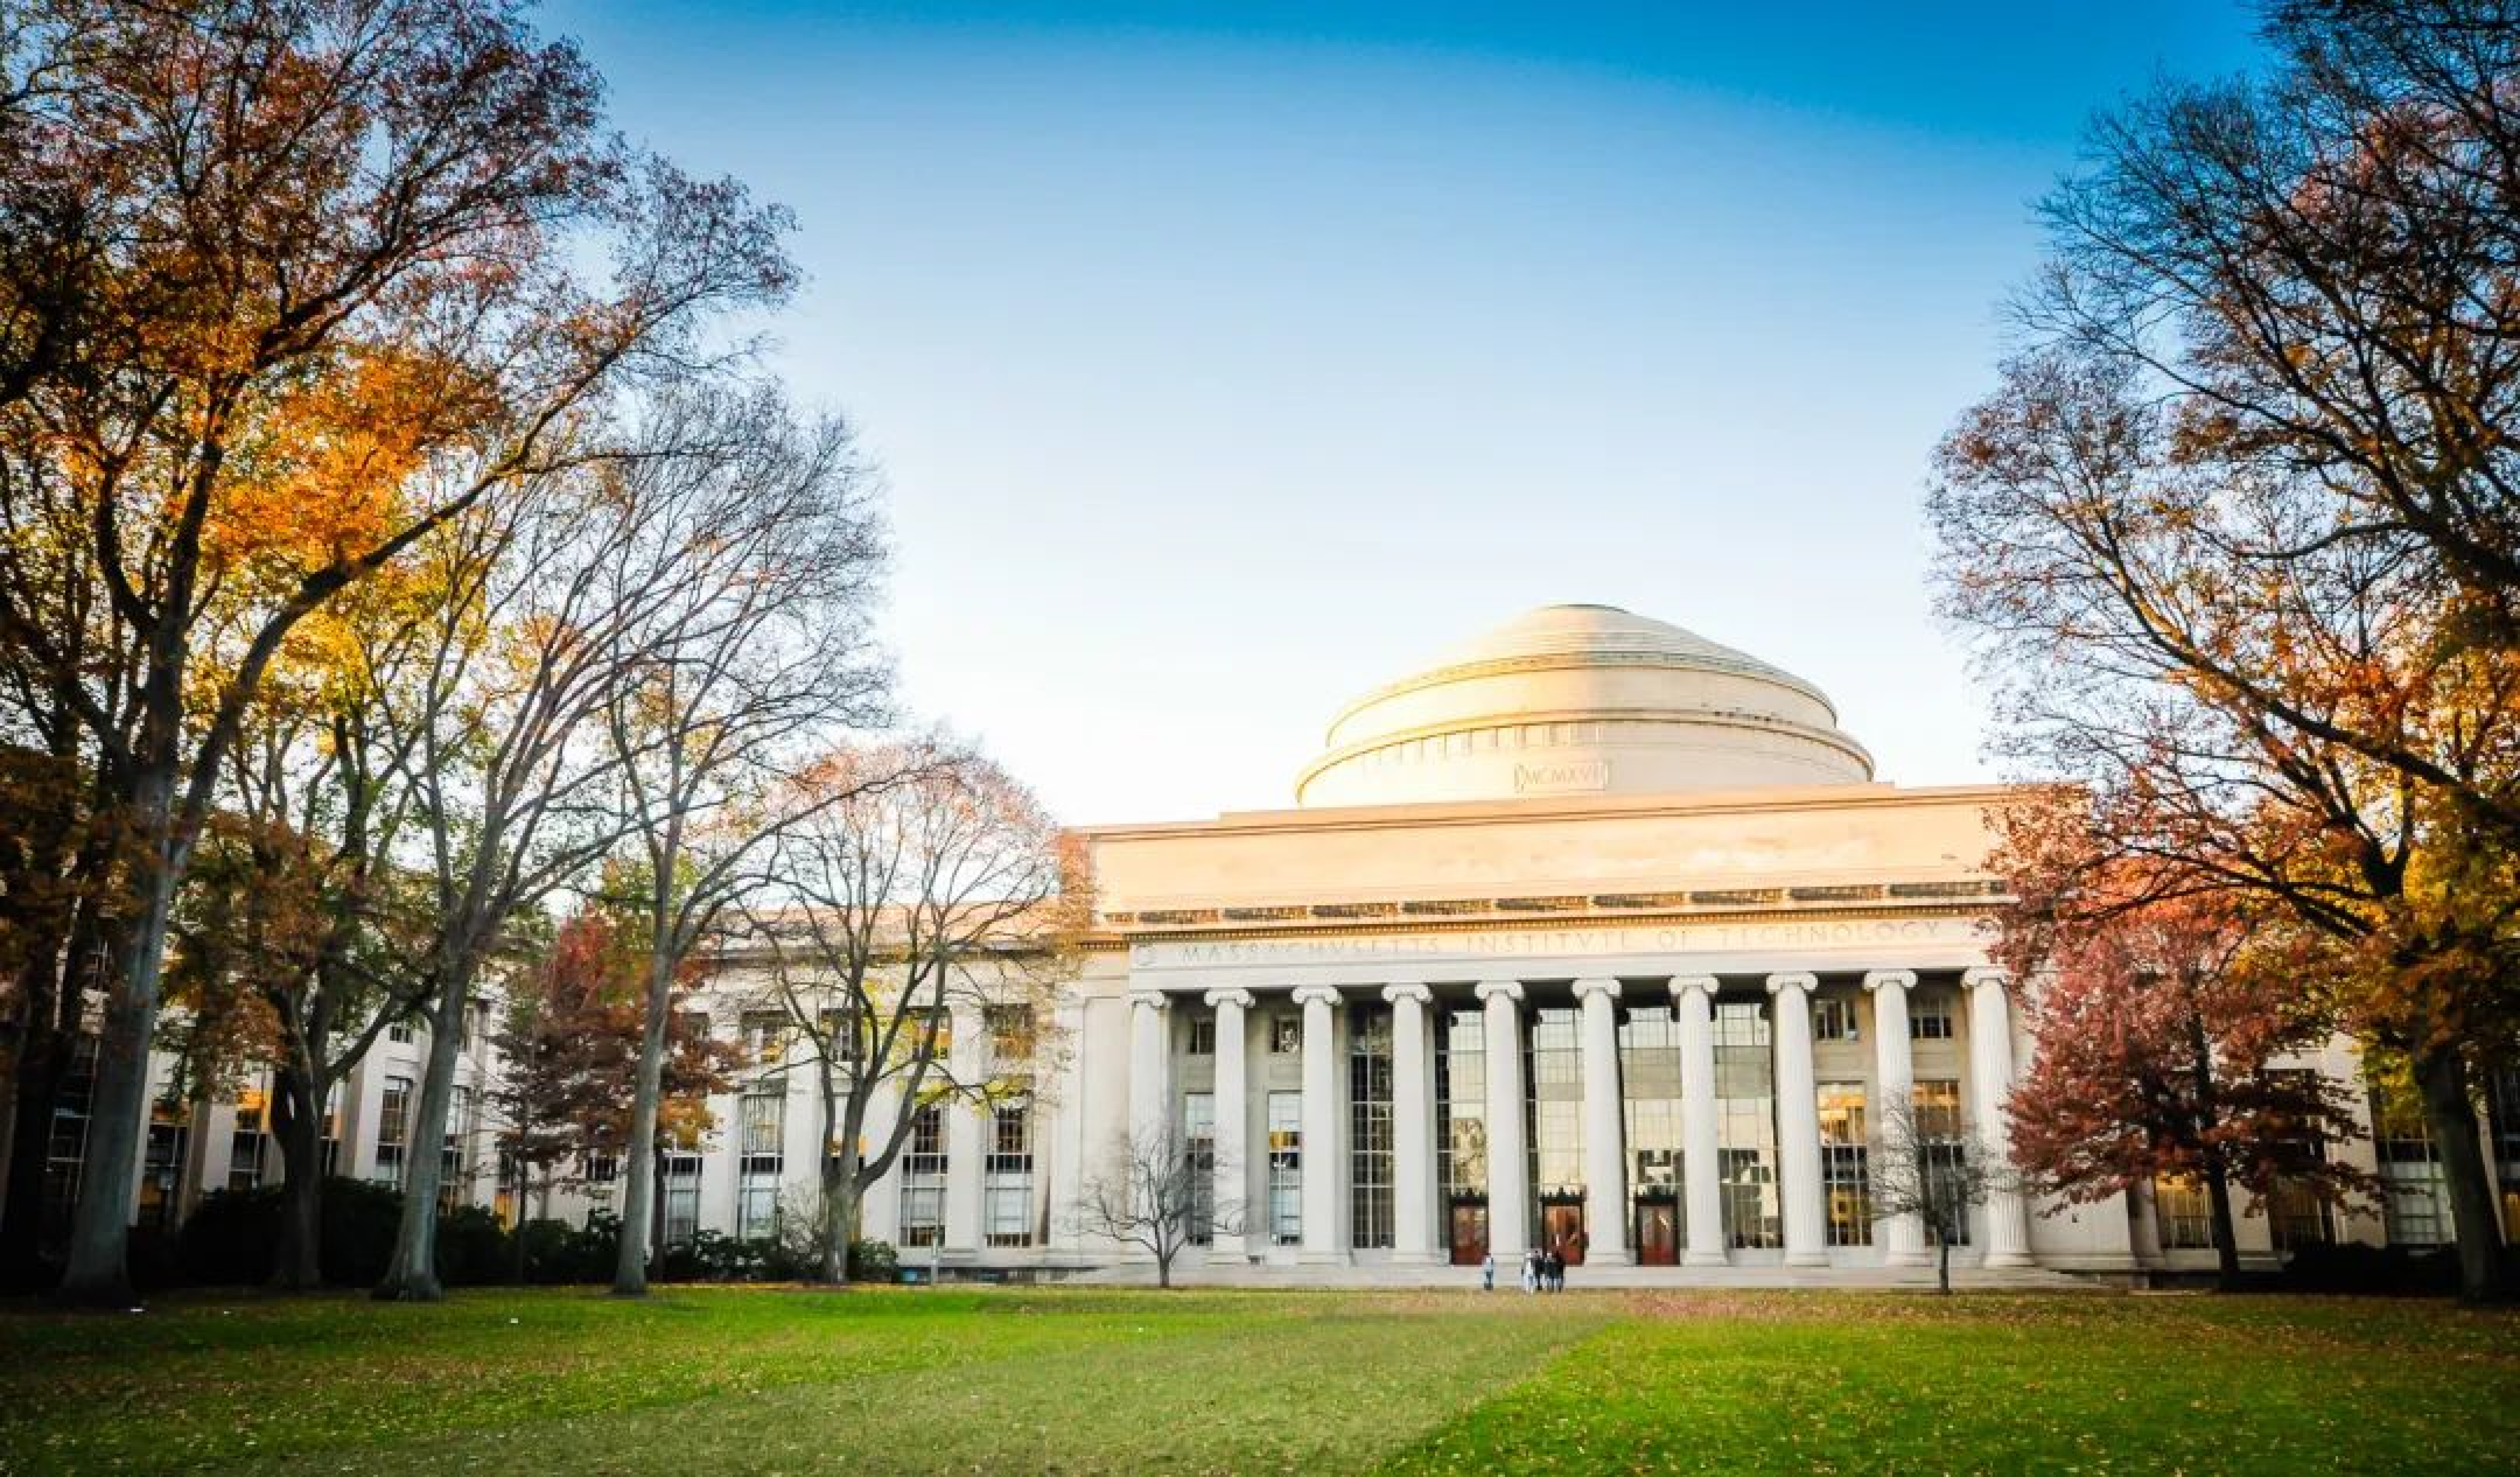 MIT本科招生办推荐的超多竞赛和夏校活动